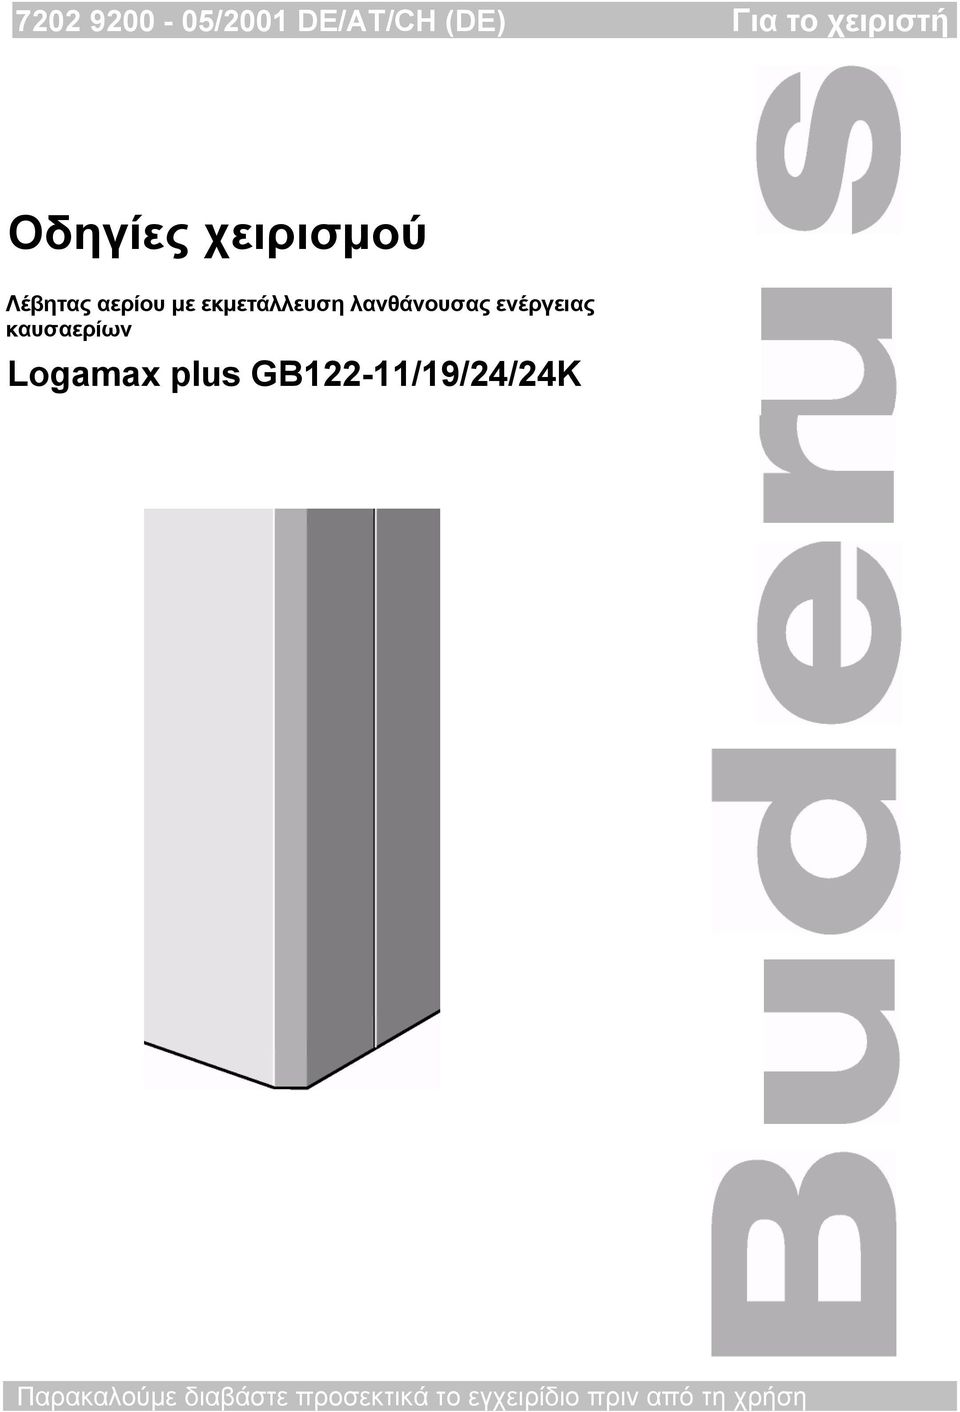 ενέργειας καυσαερίων Logamax plus GB122-11/19/24/24K